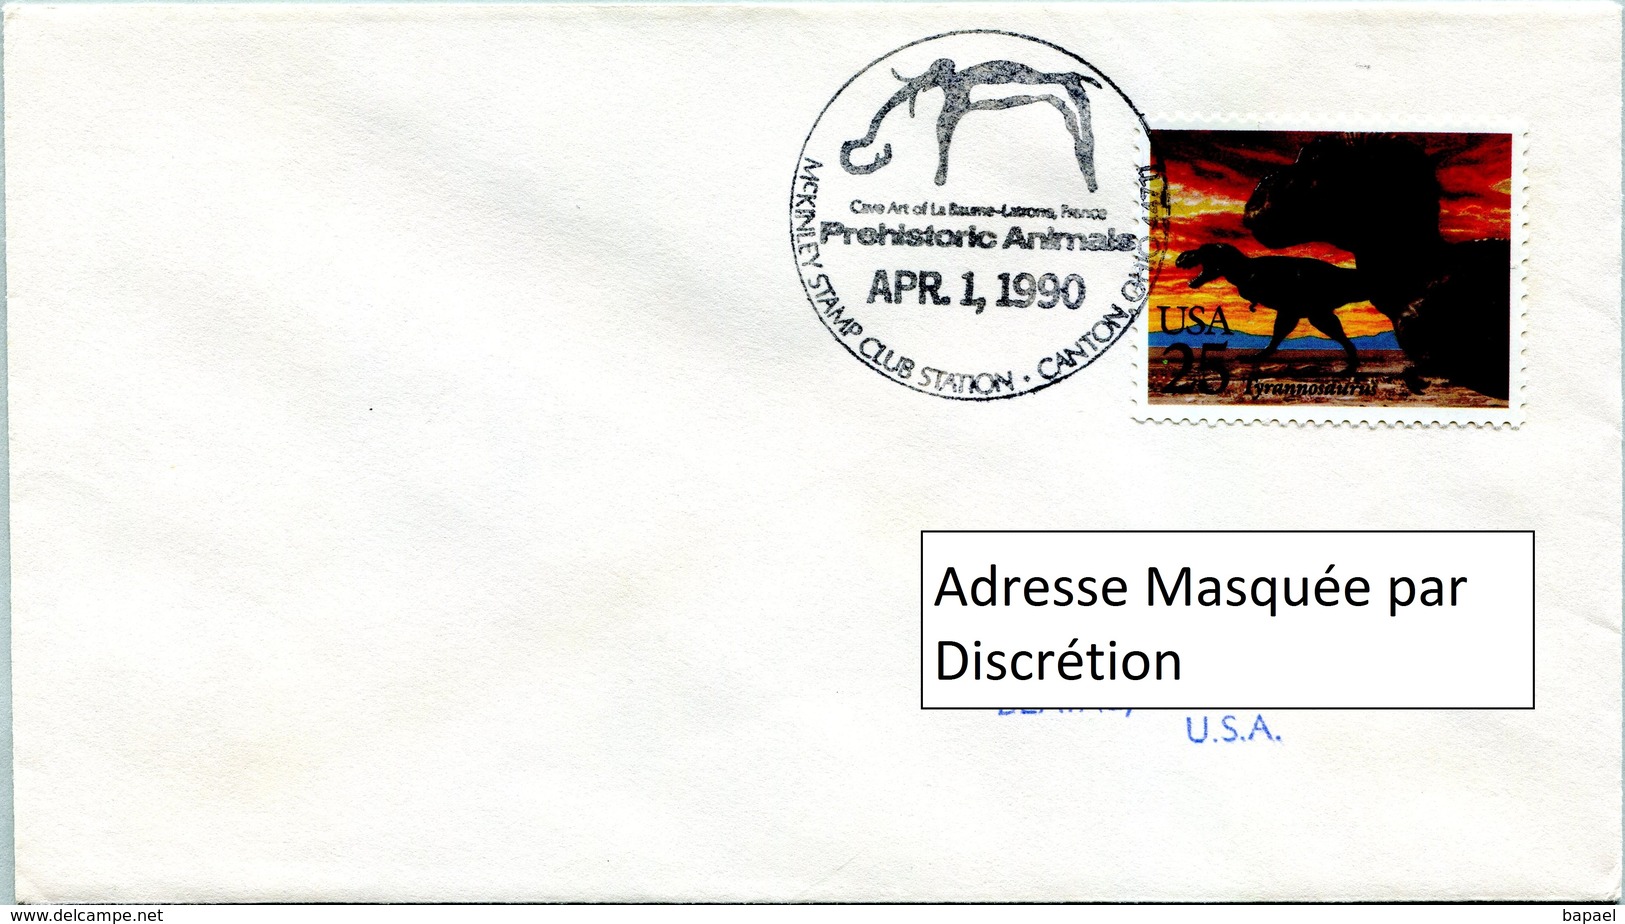 Enveloppe Évènement Des États-Unis (01-04-90) - McKinley Stamp Club - Animaux Préhistoriques (Tyrannosaure) - Schmuck-FDC